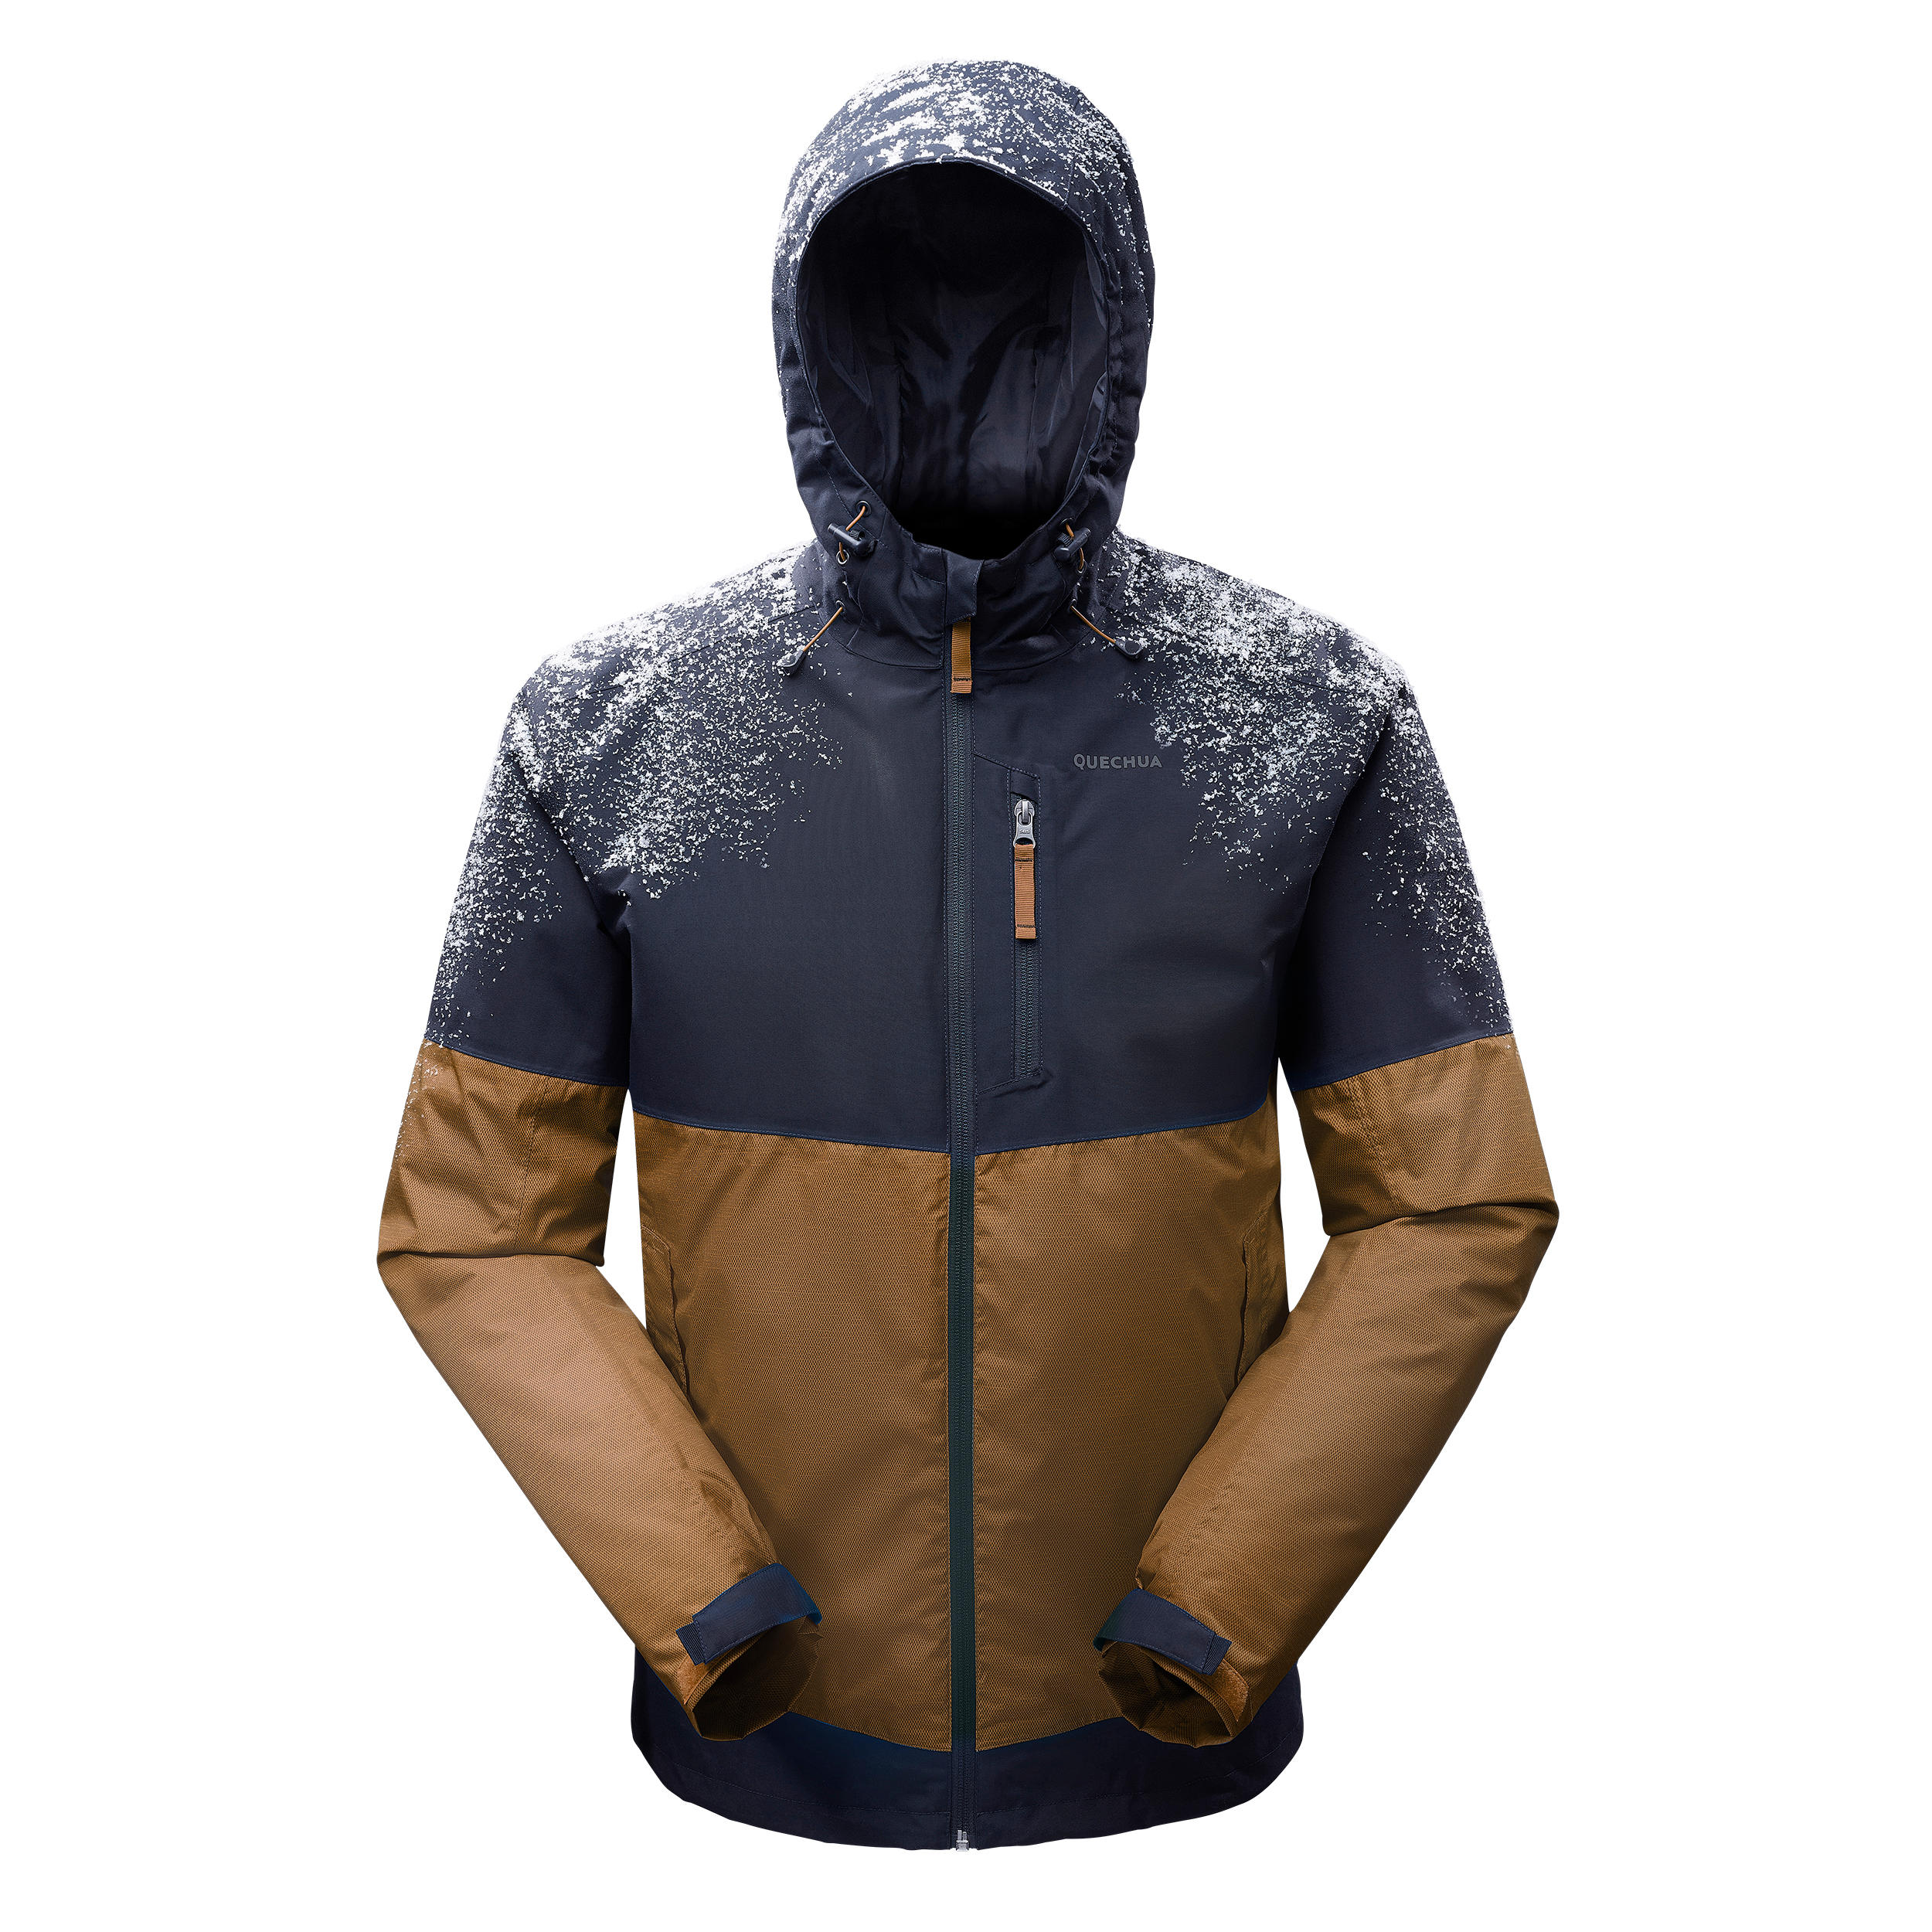 Men’s Waterproof Winter Hiking Jacket - SH100 X-WARM -10°C 11/11